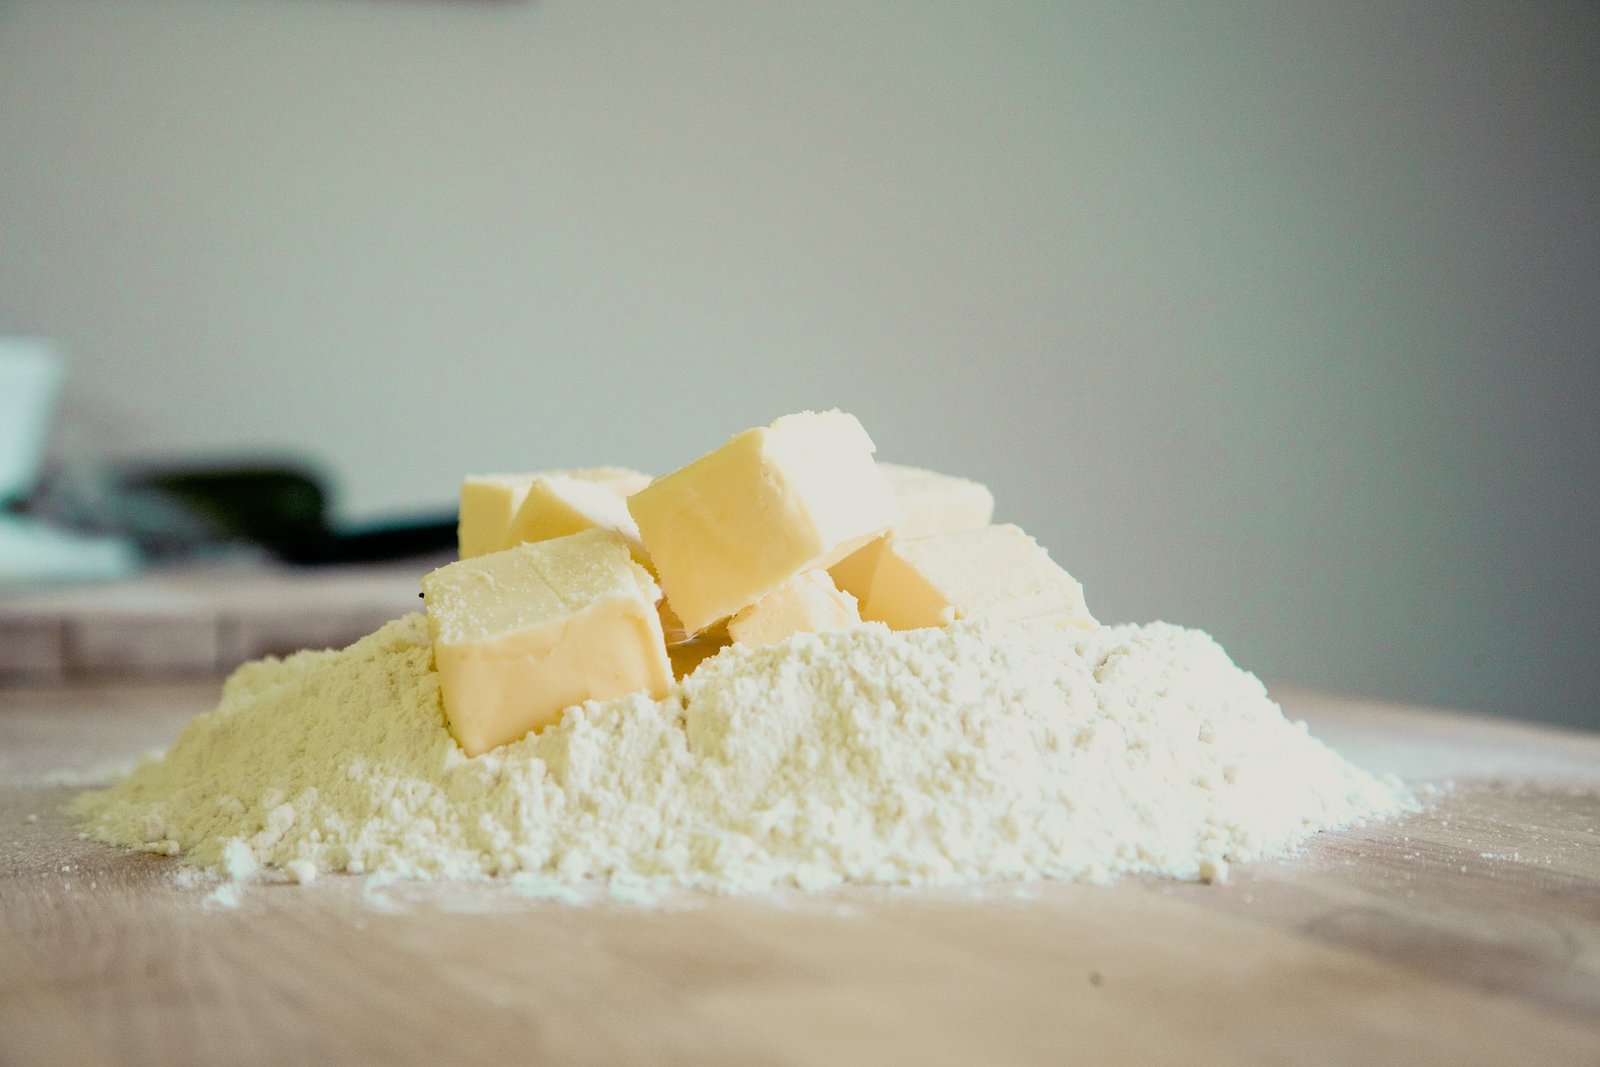 La farina i la mantega solen proporcionar sabors diferents així que compte amb les quantitats.